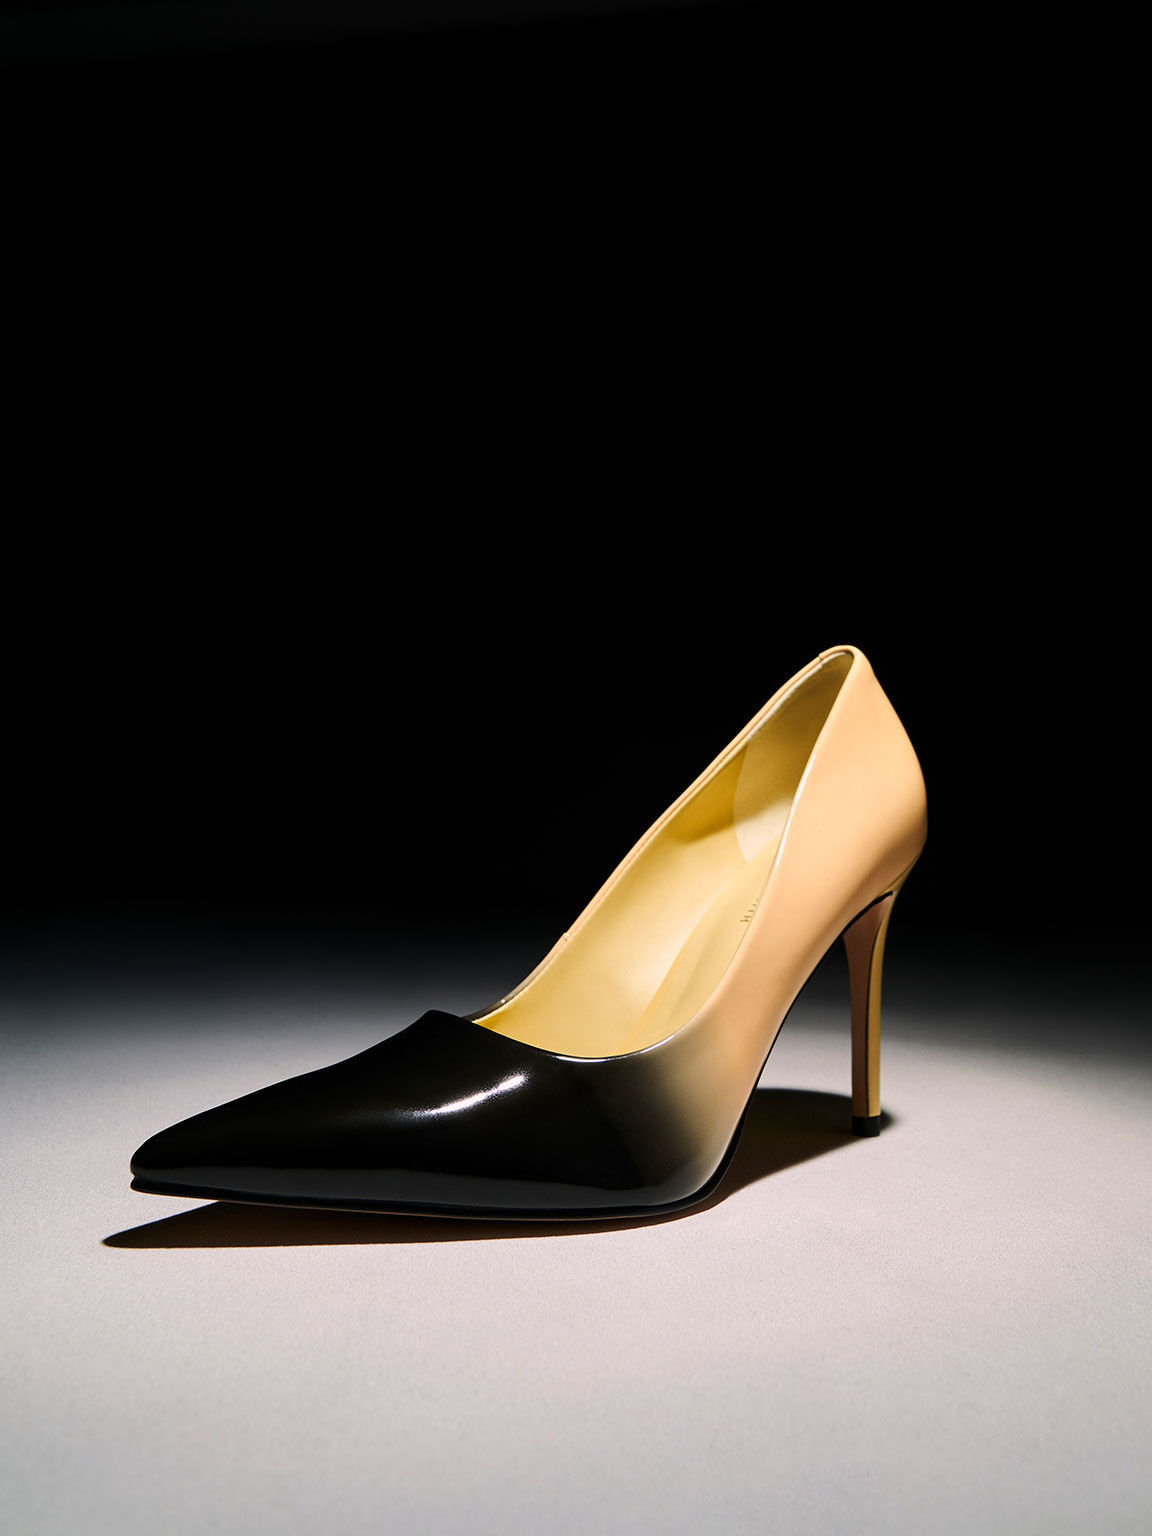 Betsy Trotwood El otro día Pelágico Zapatos de Tacón de Aguja Color Gris en Dos Tonos - CHARLES & KEITH EU